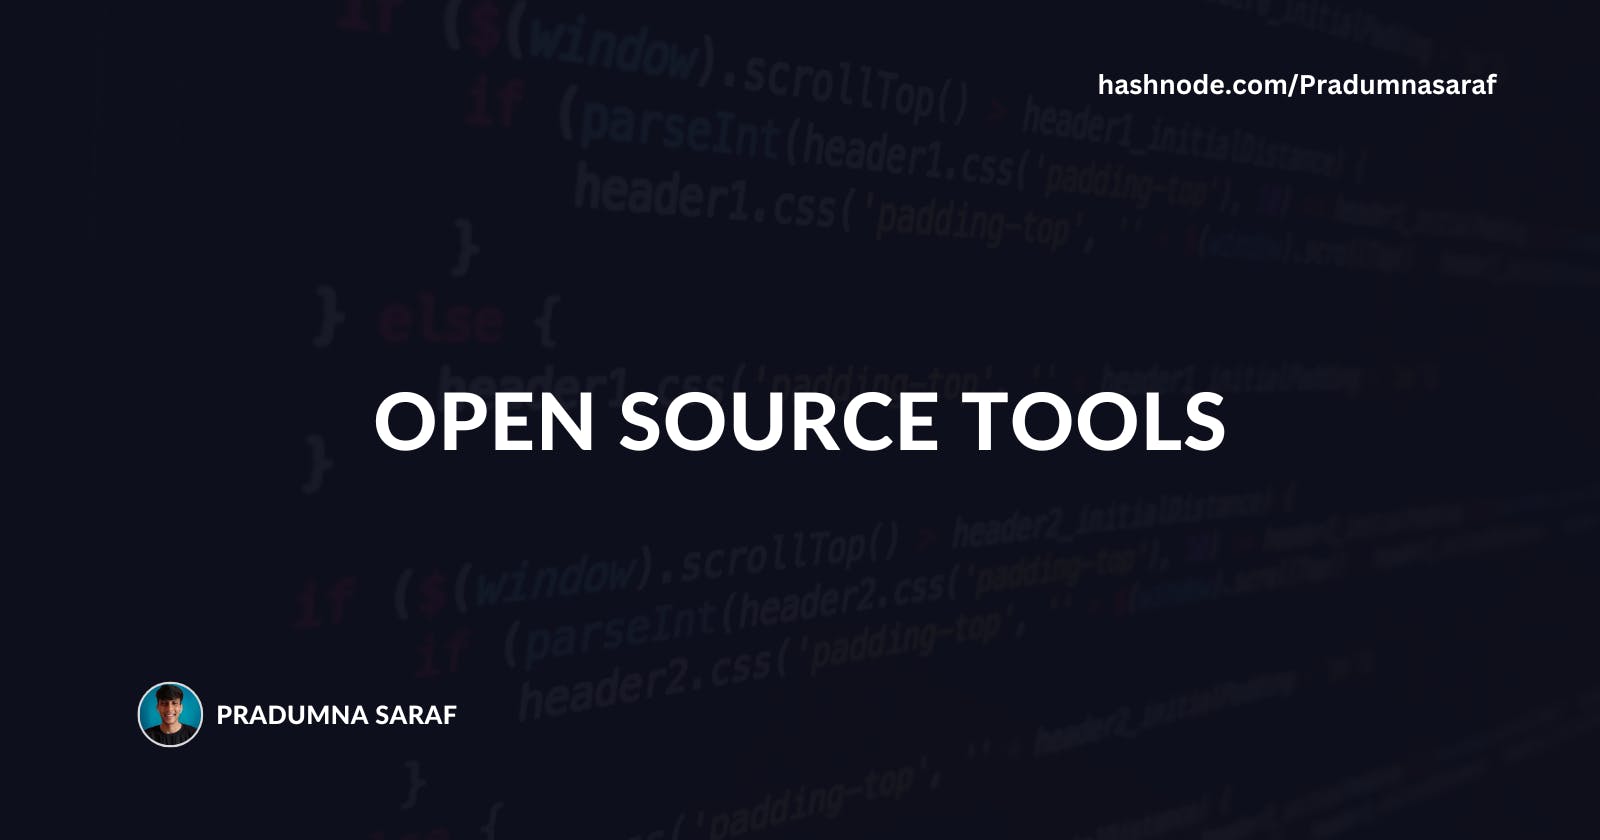 Open Source tools